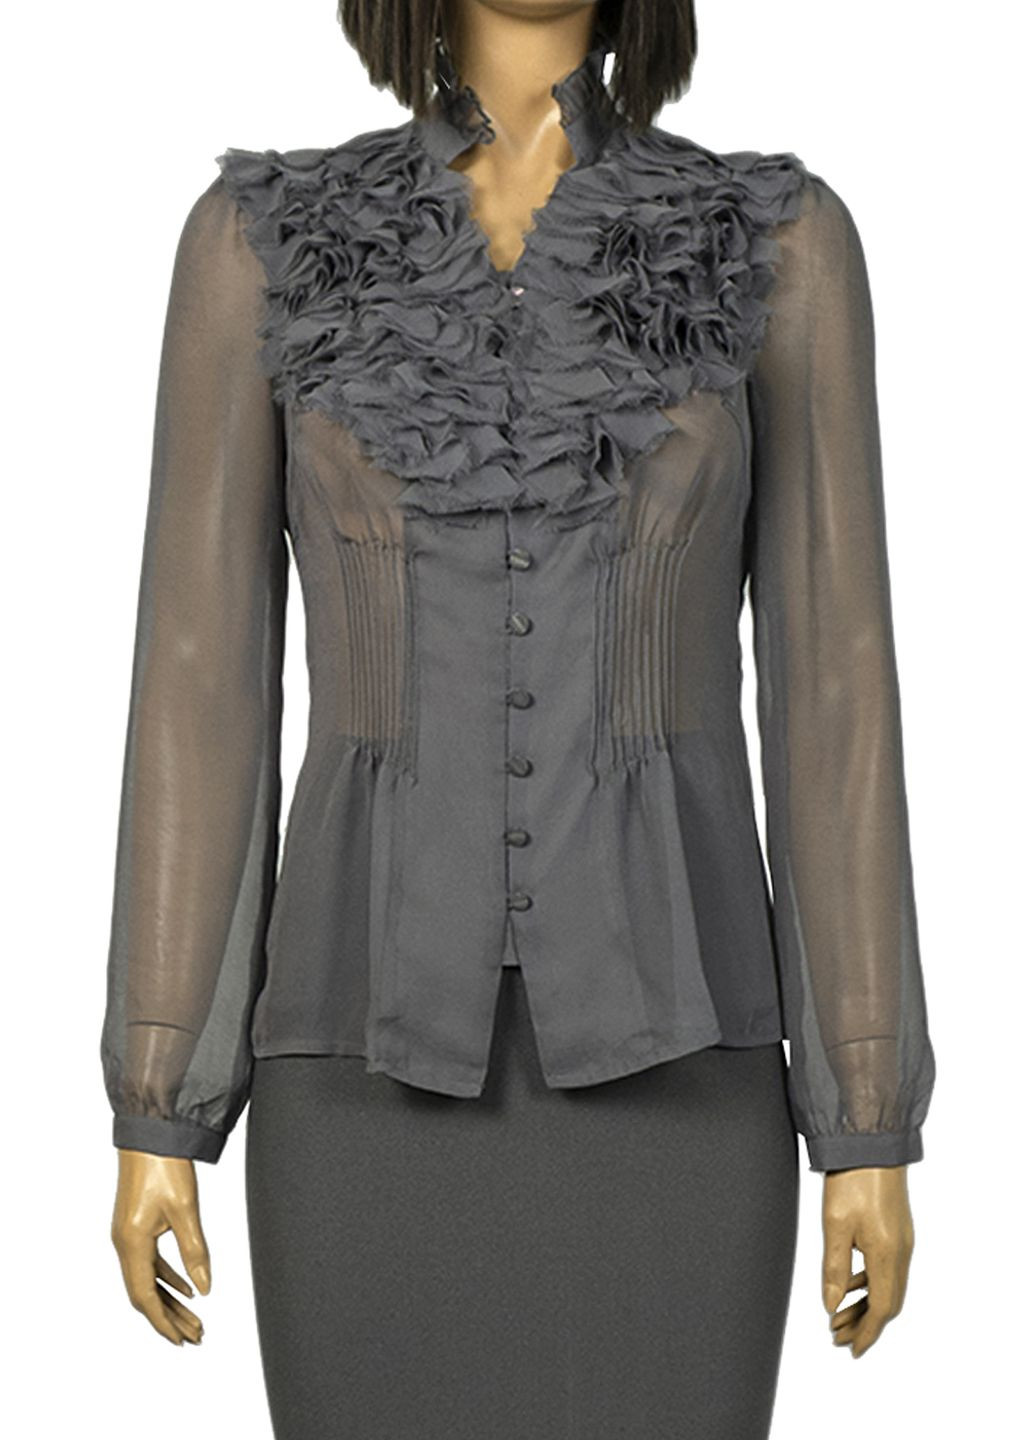 Серая женская блуза с жабо lw-332065 серый Lowett